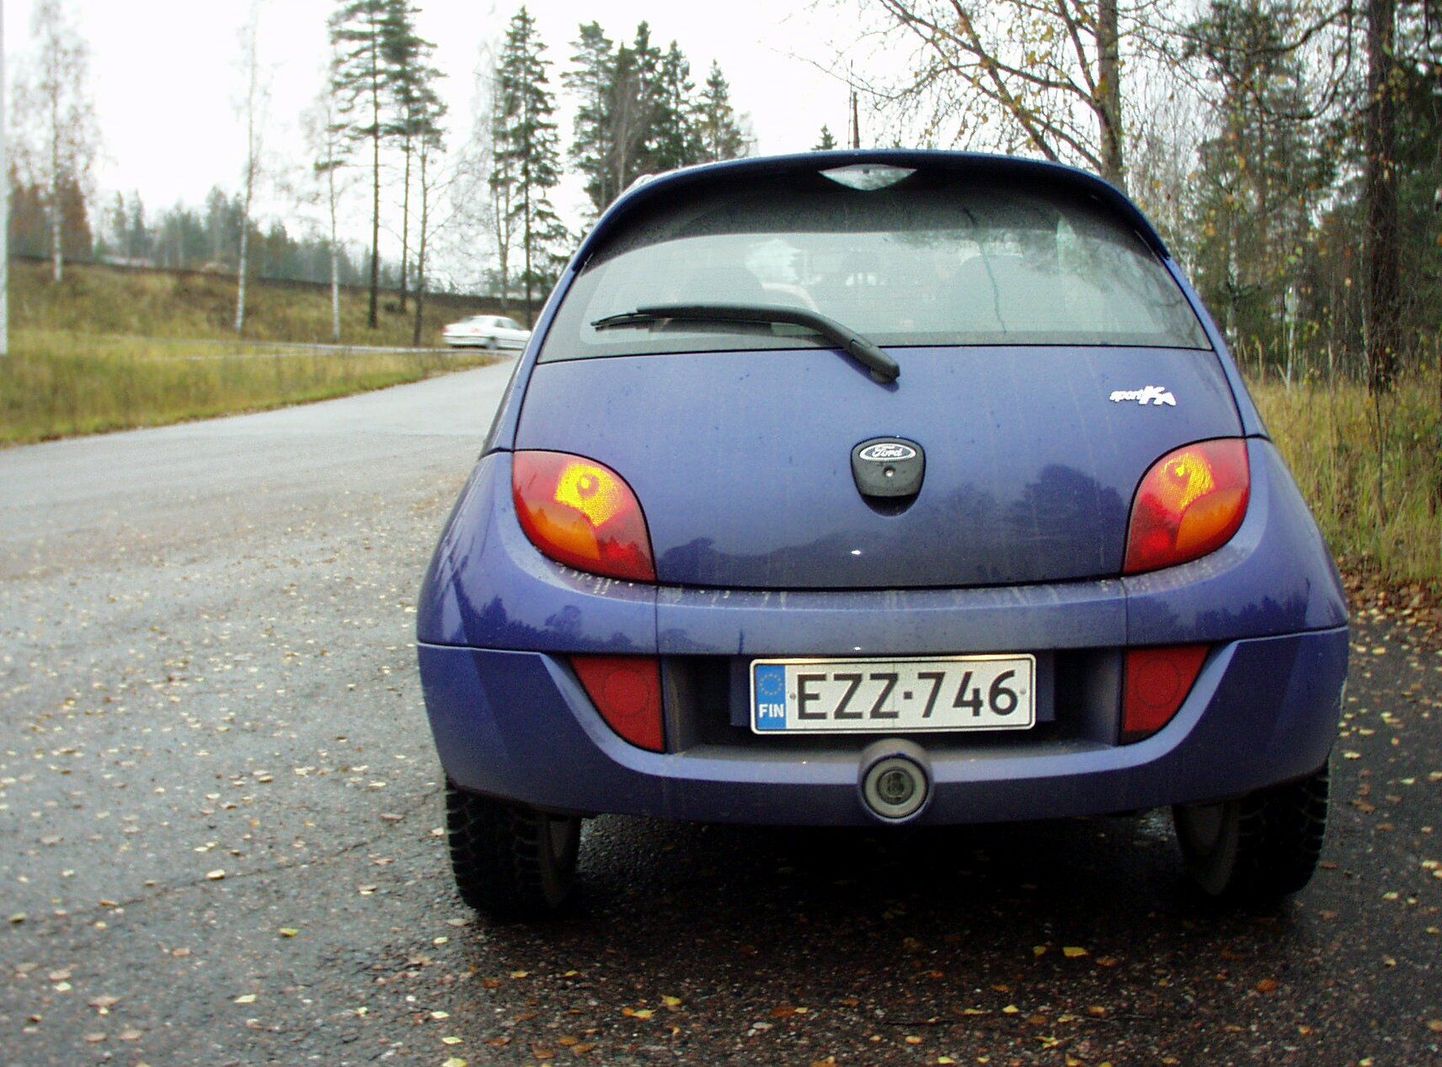 Soome numbrimärgiga auto.